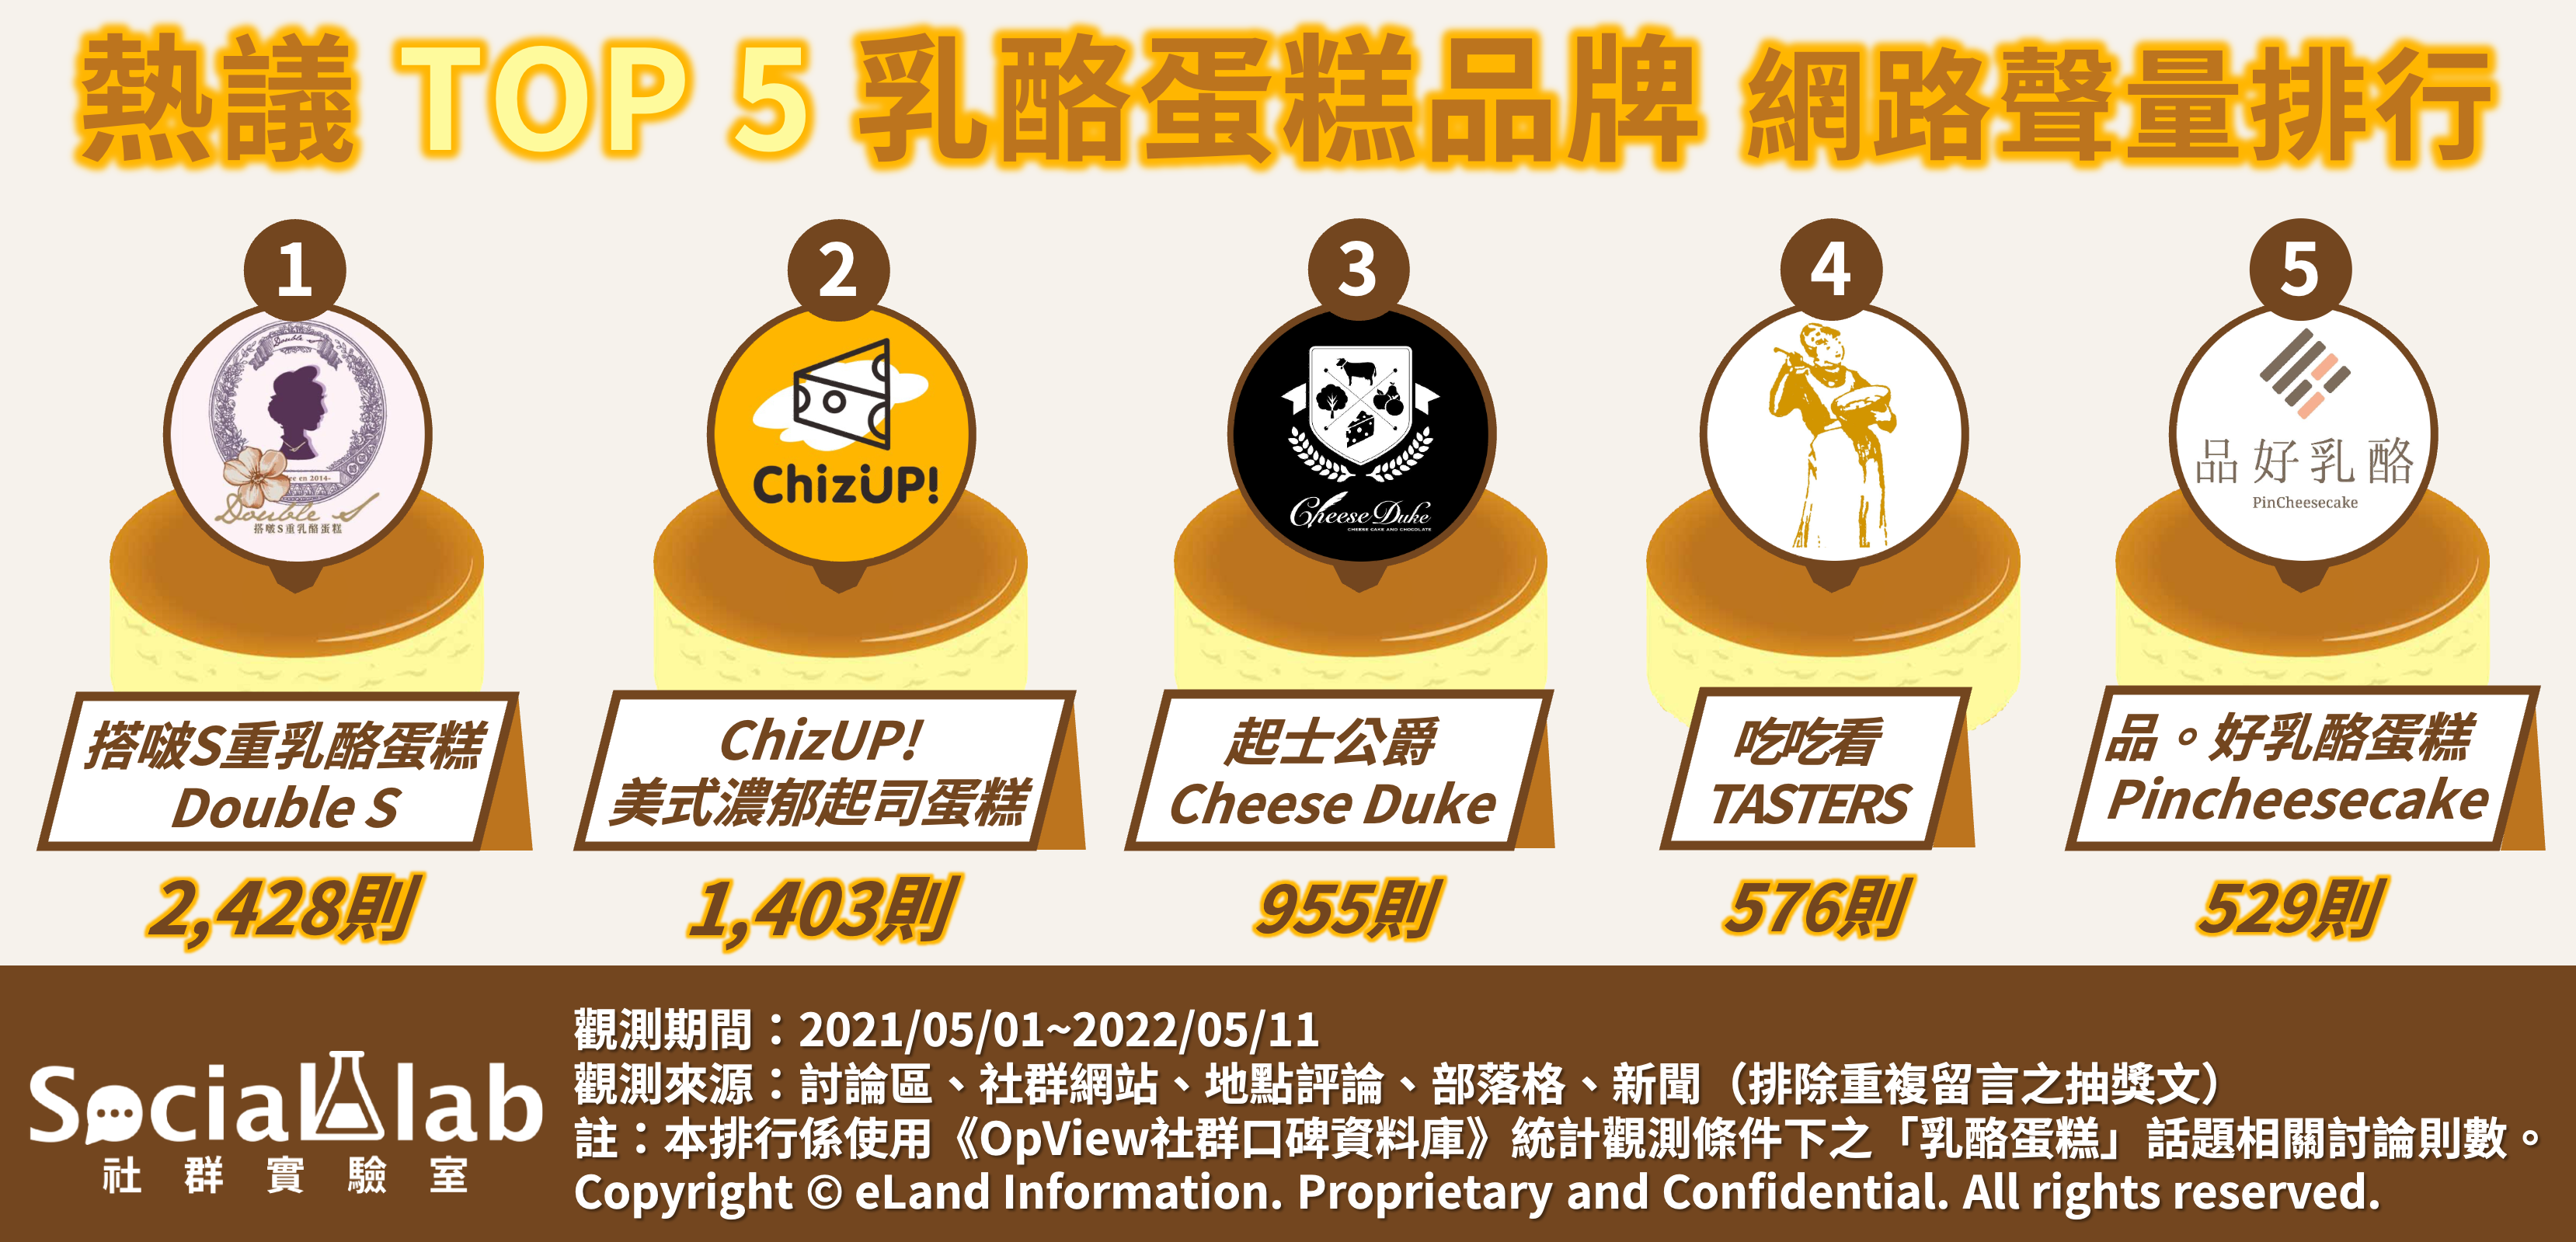 熱議TOP5乳酪蛋糕品牌 網路聲量排行